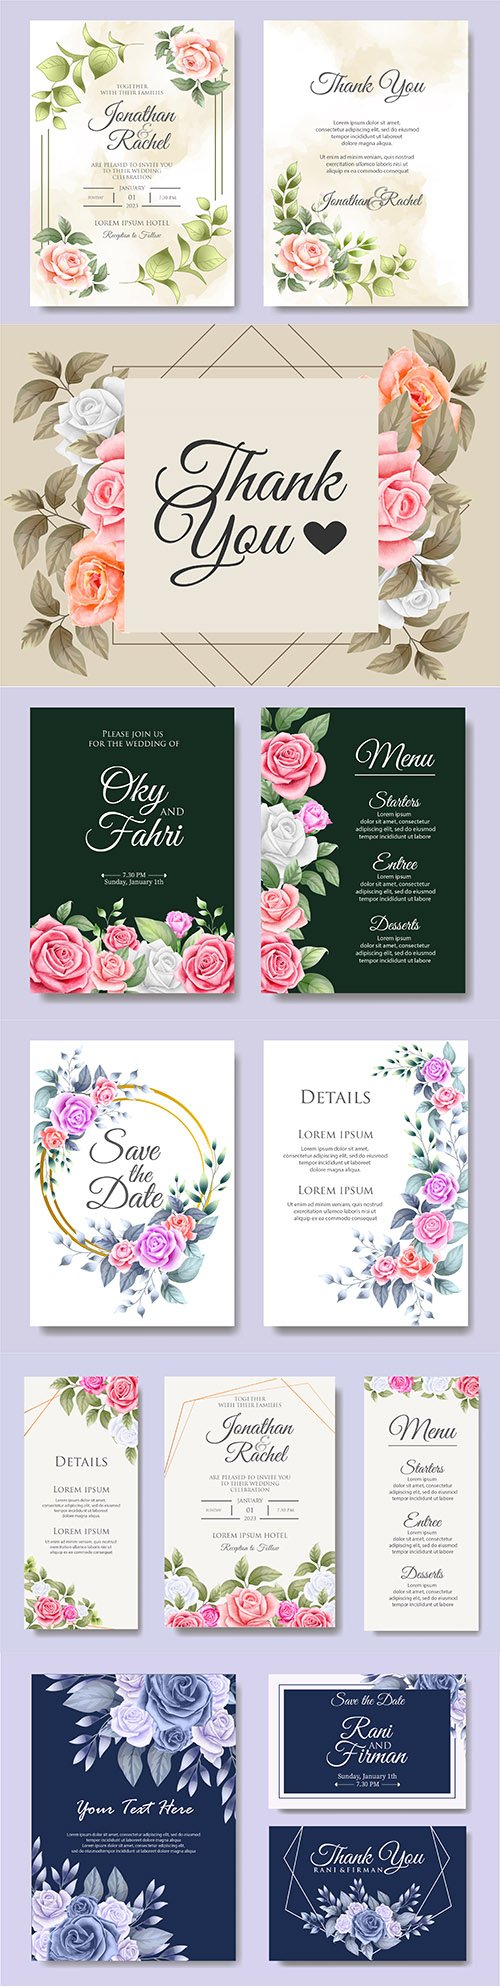 Elegant wedding invitation template flowers and leaves 2